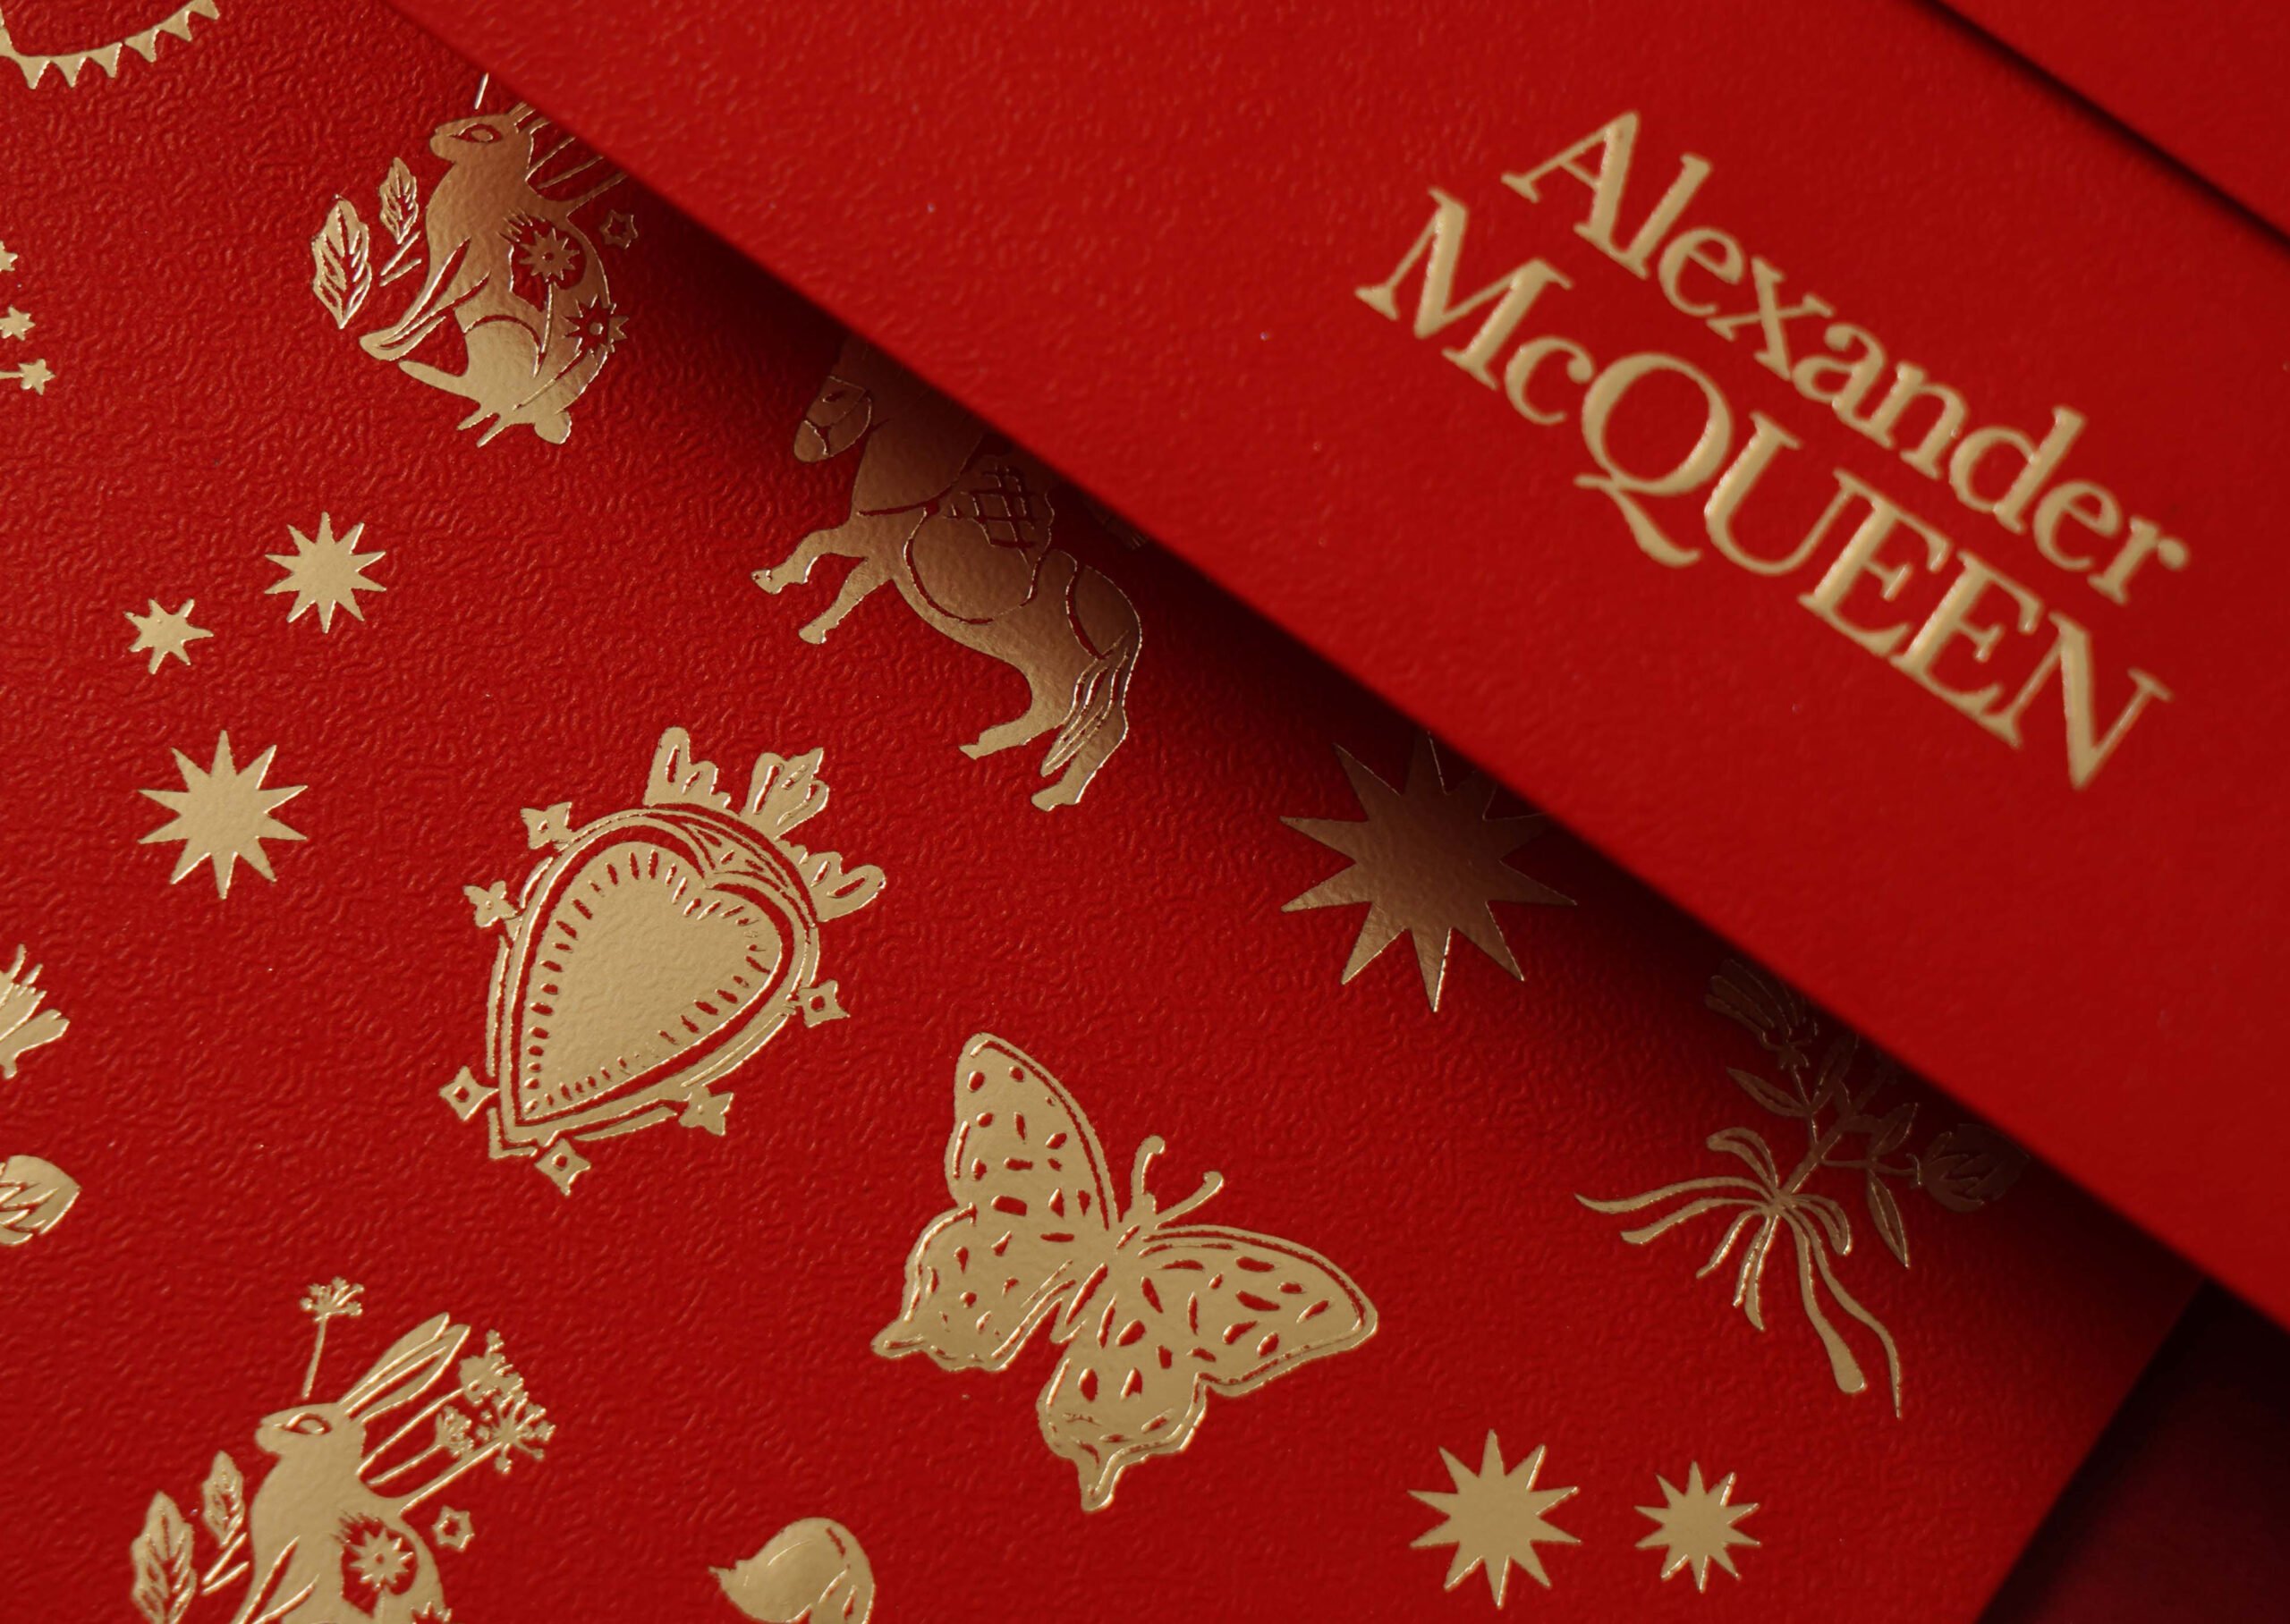 Alexander McQueen CNY2022 Red Packet Design - SolidCo Studio